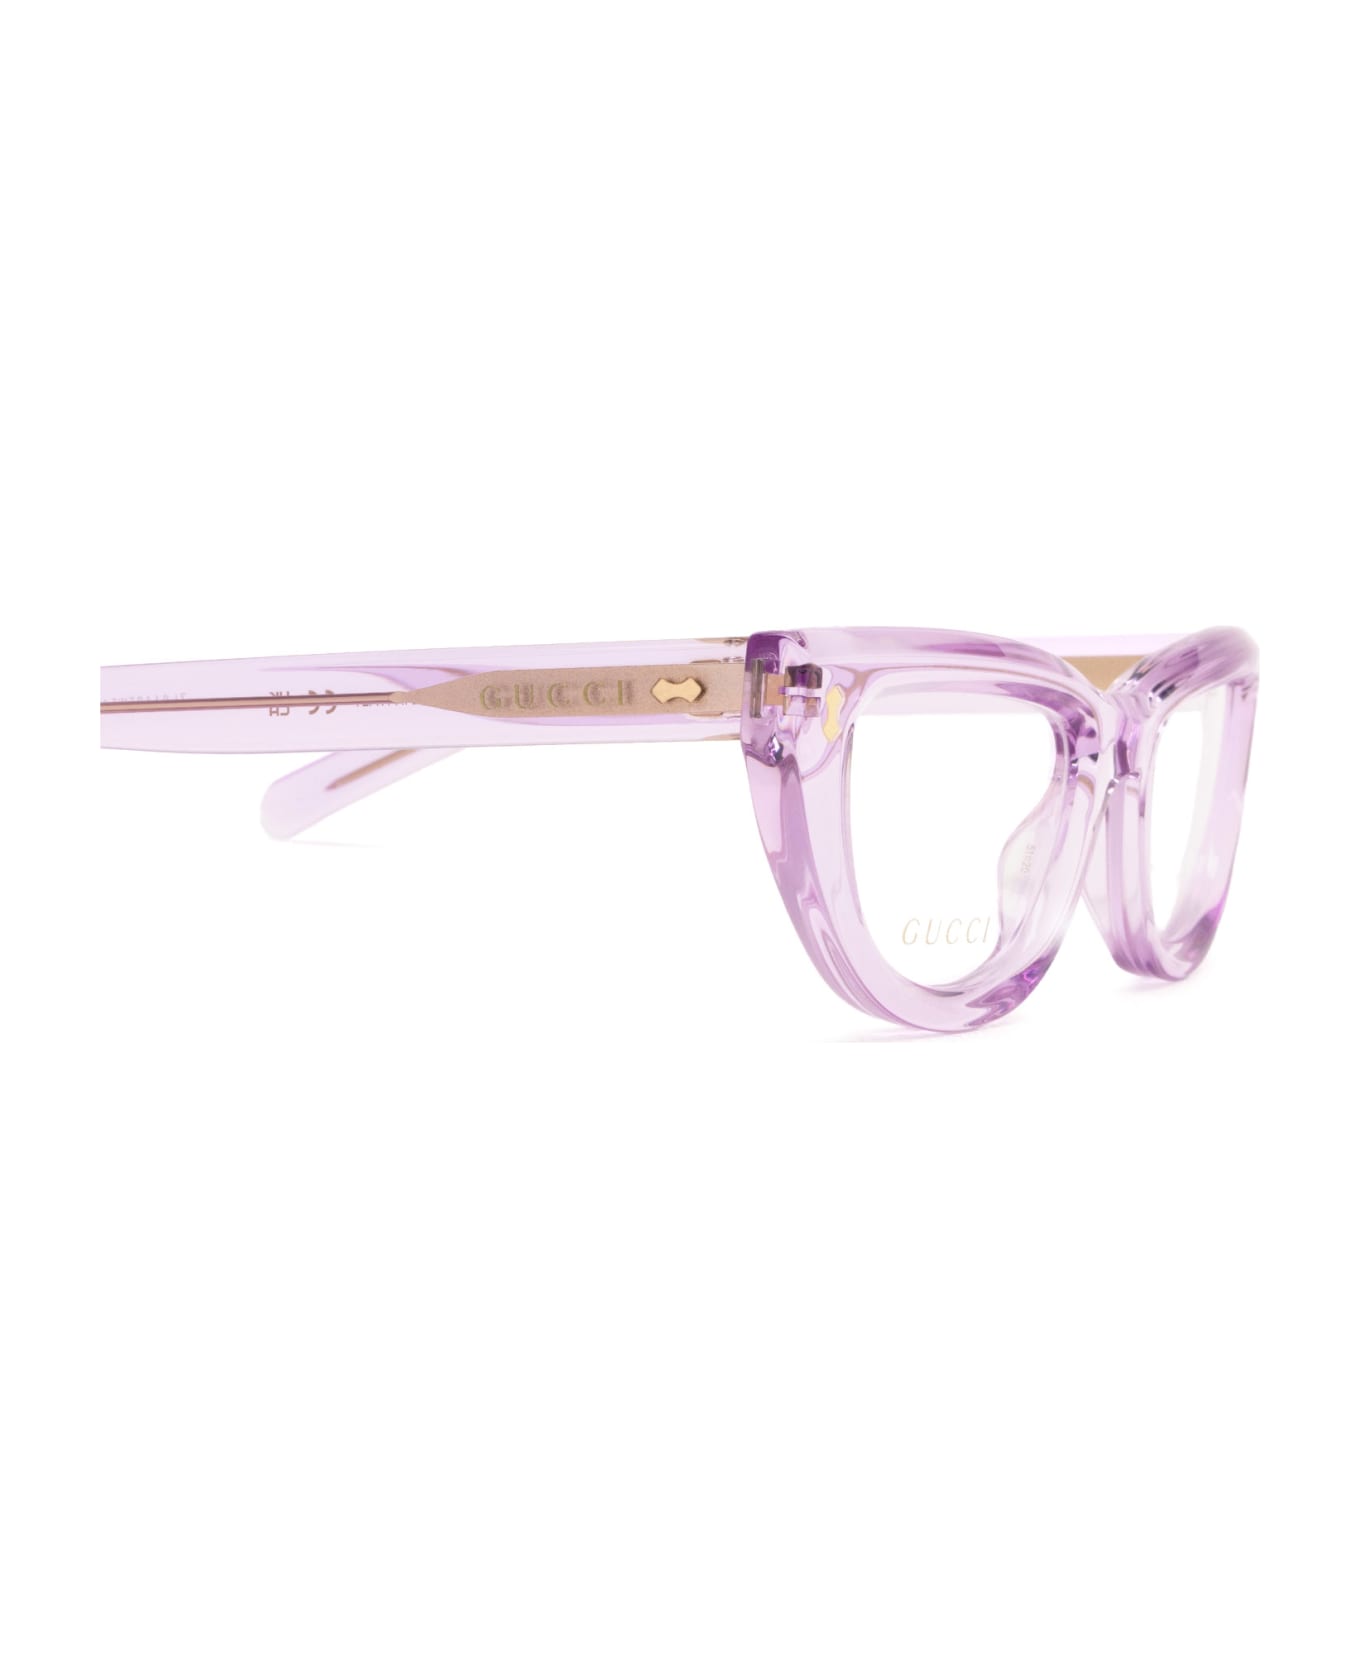 Gucci Eyewear Gg1521o Violet Glasses - Violet